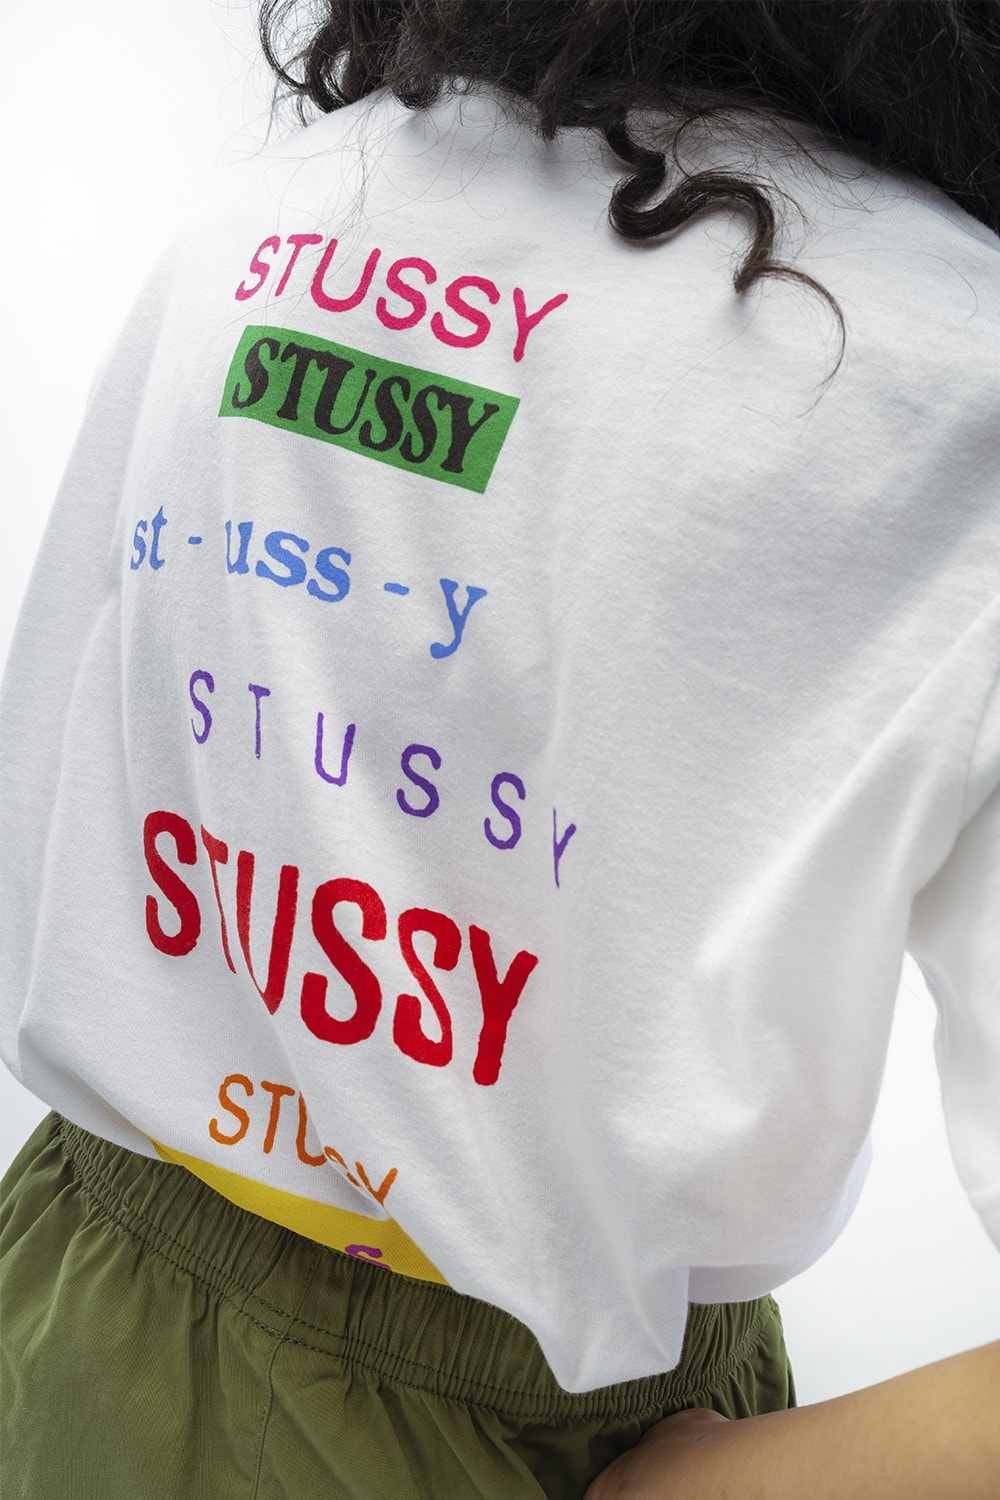 神級歸位－Stussy 香港專門店將迎來別注單品系列